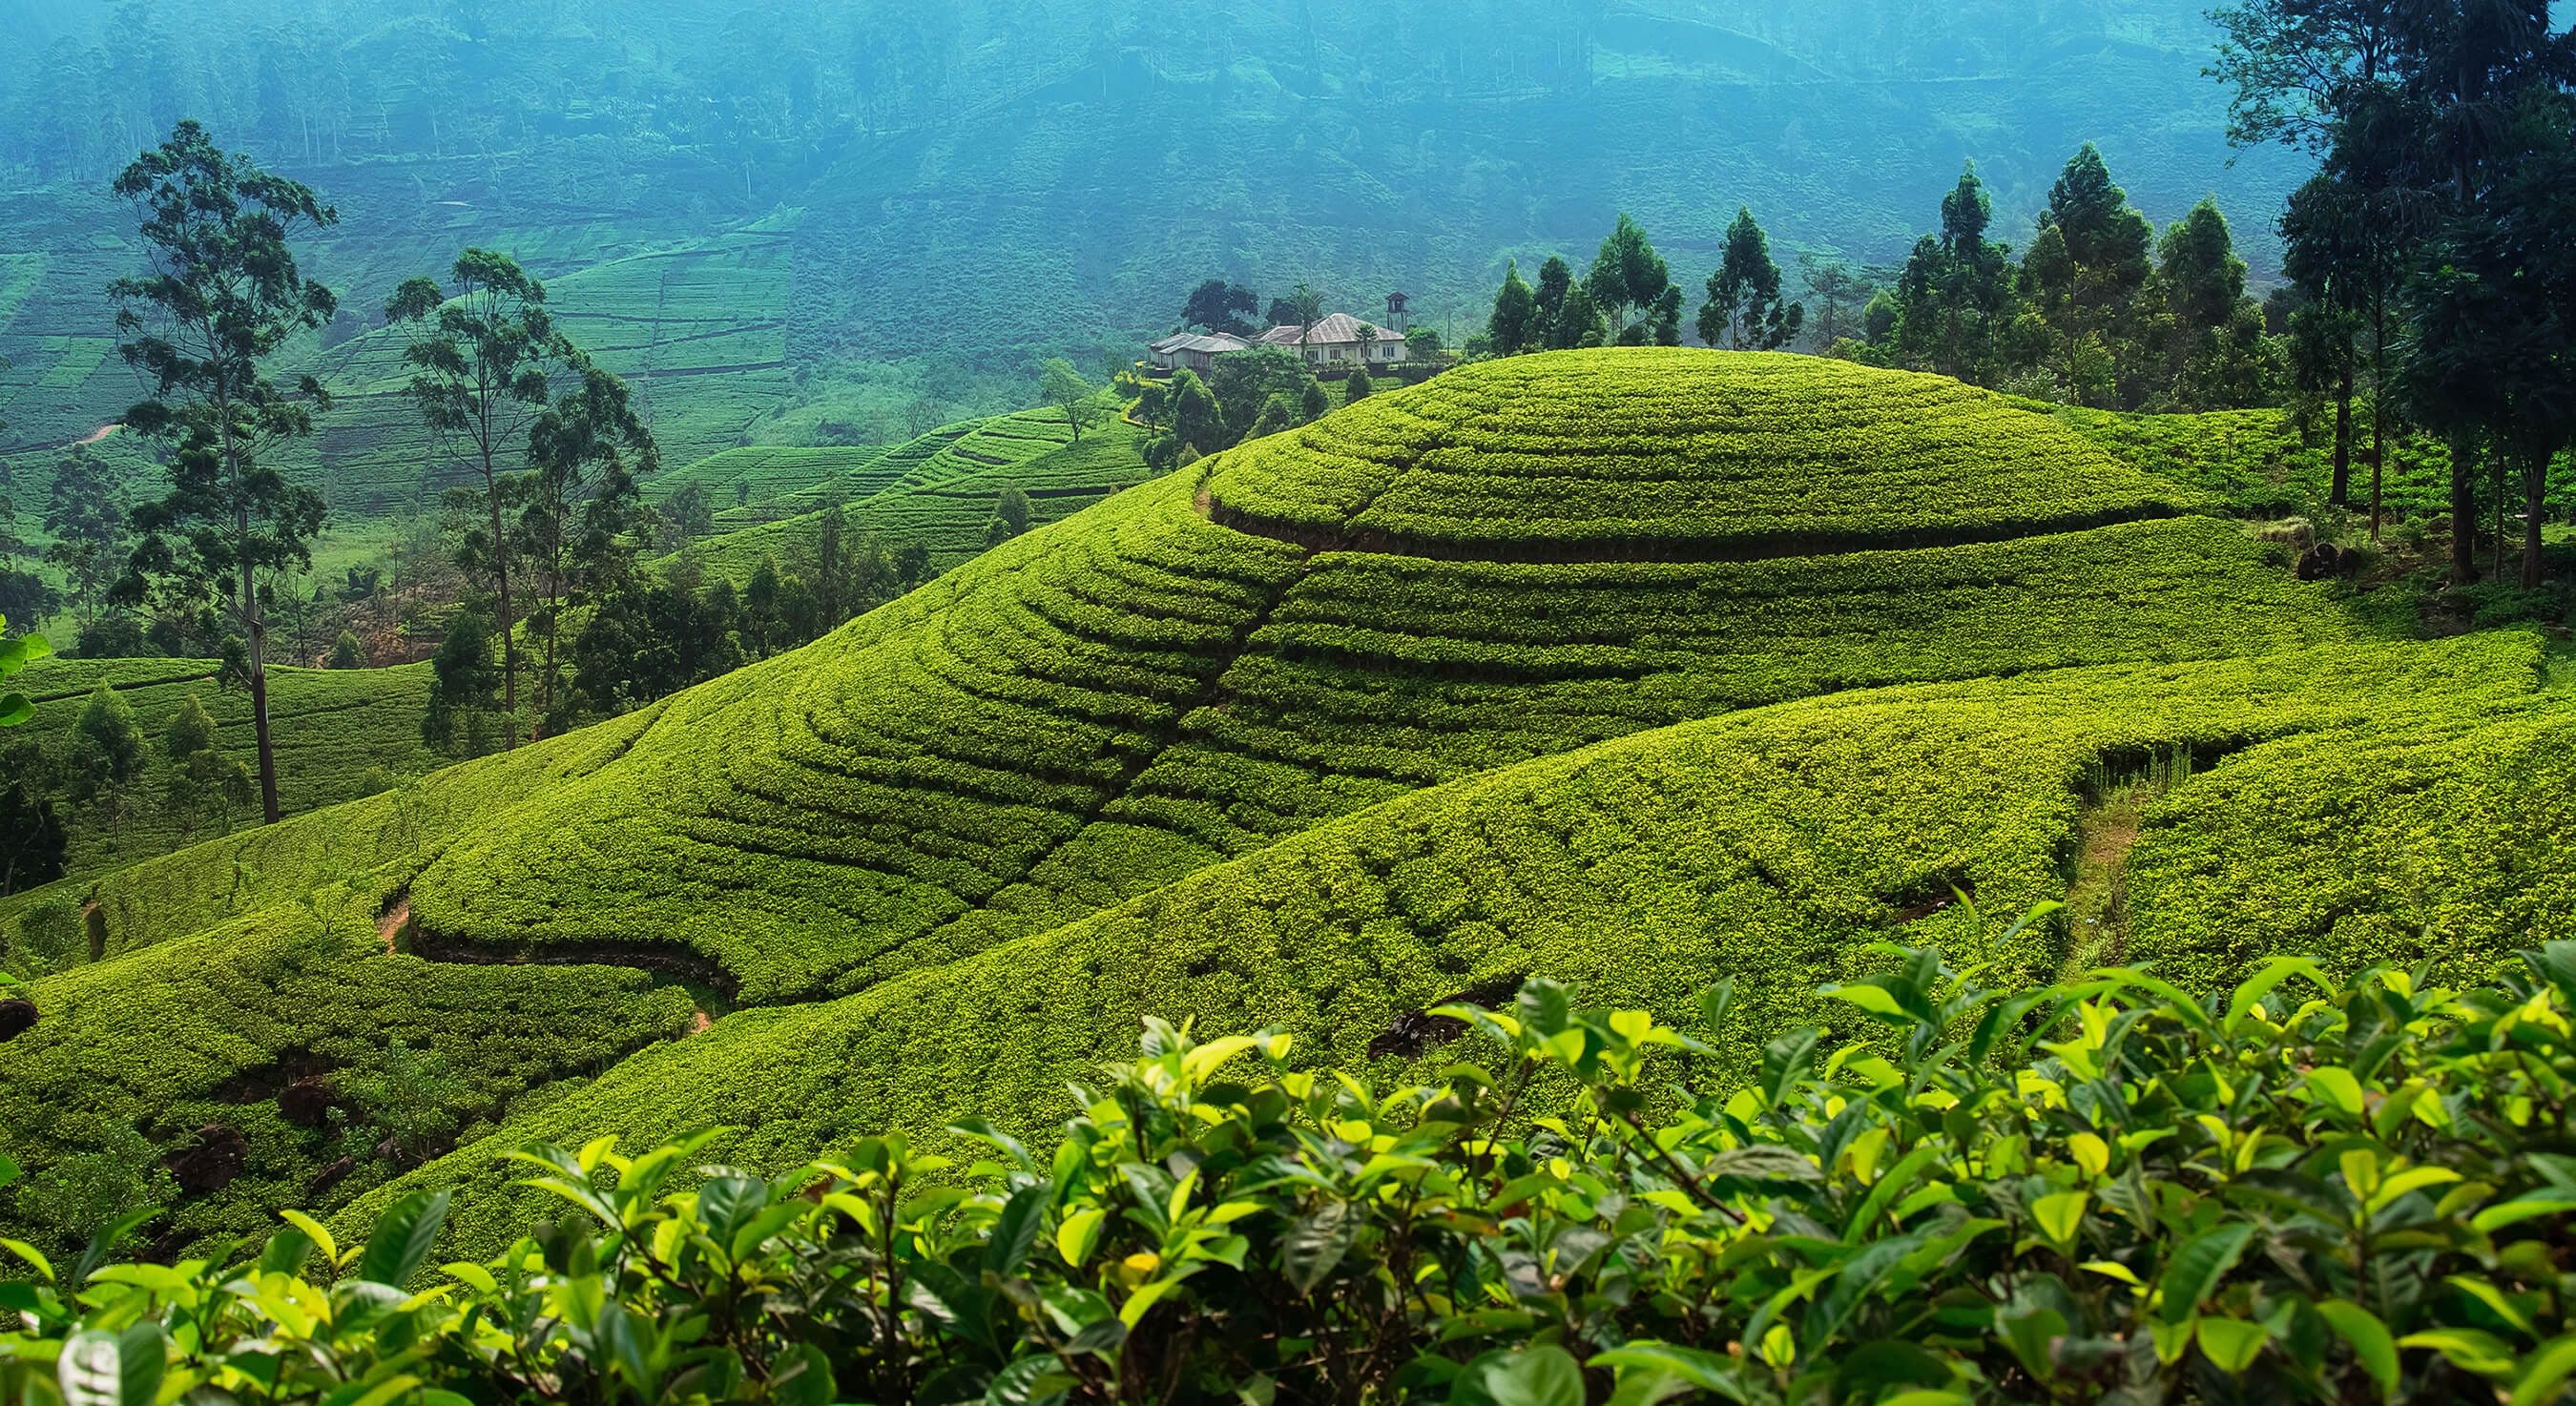 مزرعة الشاي في أعلى الريف بالقرب من نوارا إليا ، سريلانكا.